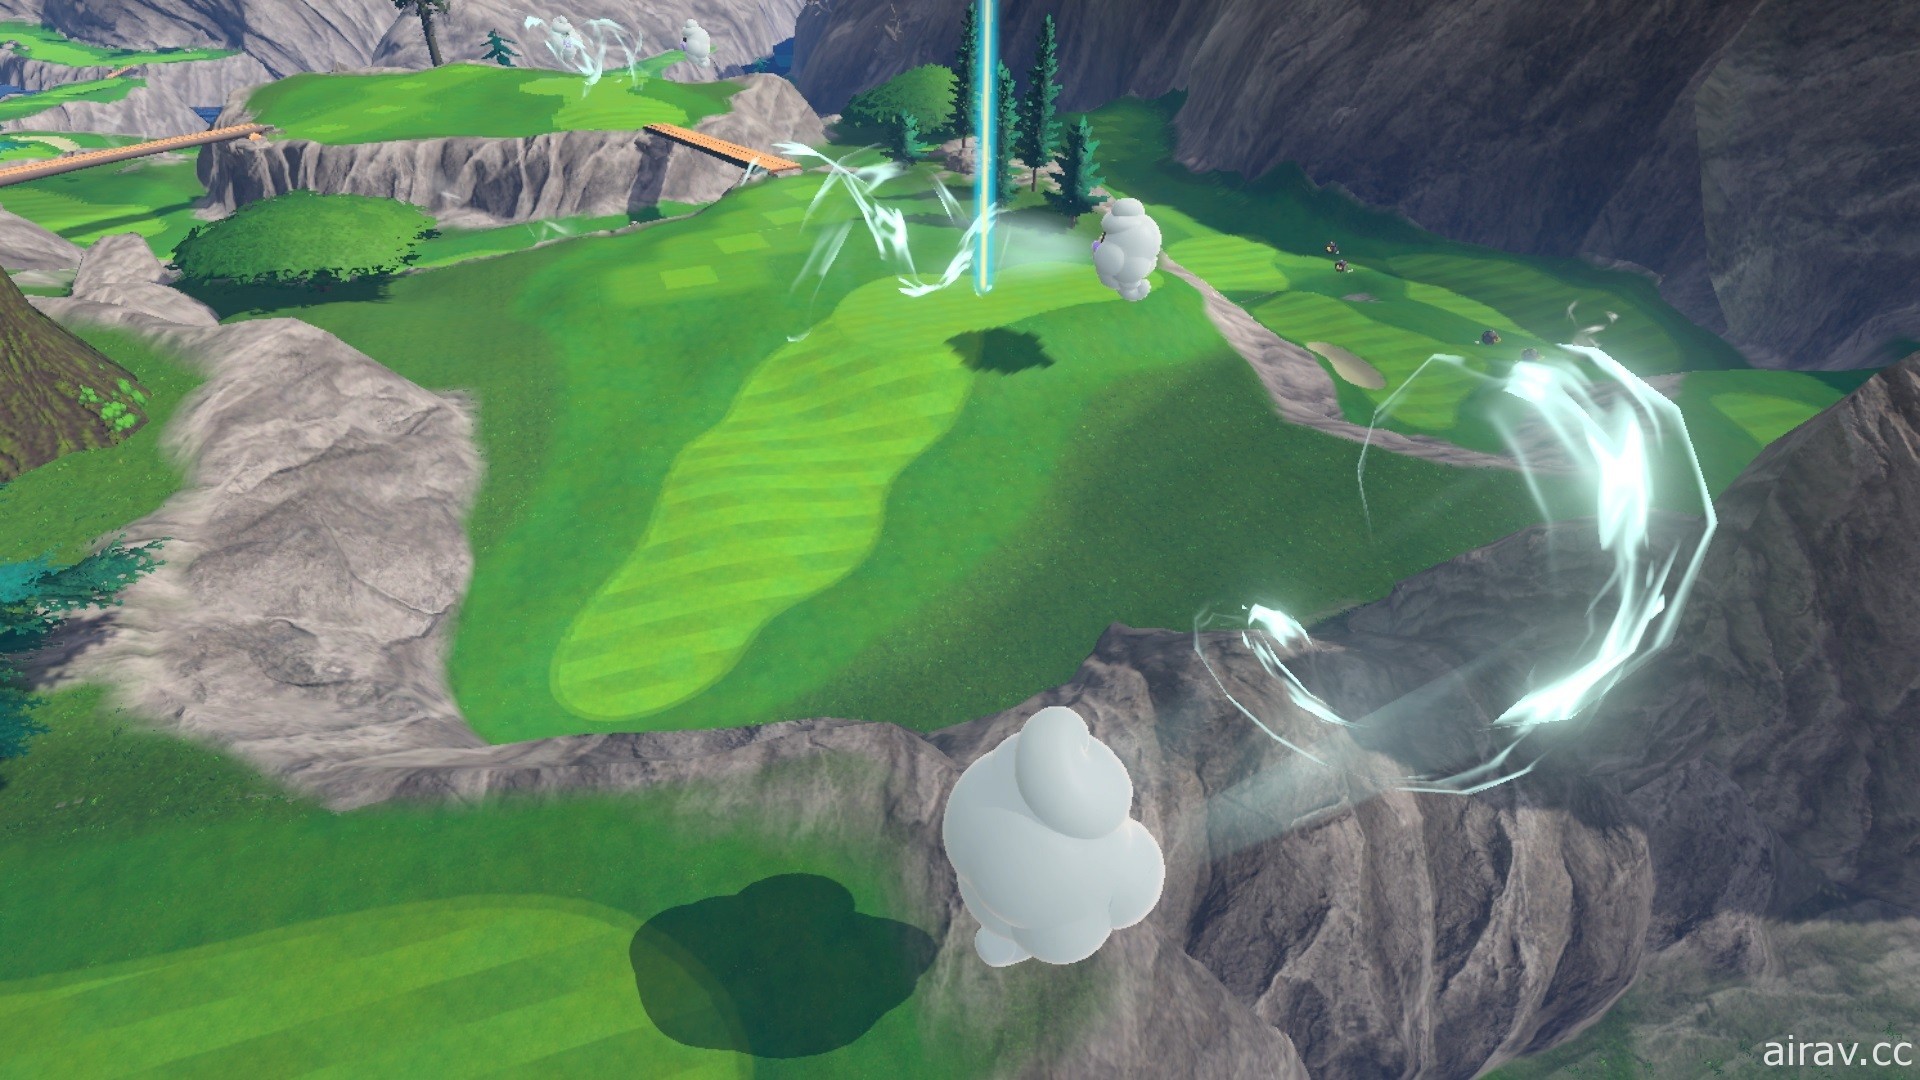 《瑪利歐高爾夫 超級衝衝衝》公布最新介紹影片 支援體感遊玩與「快速高爾夫」等模式